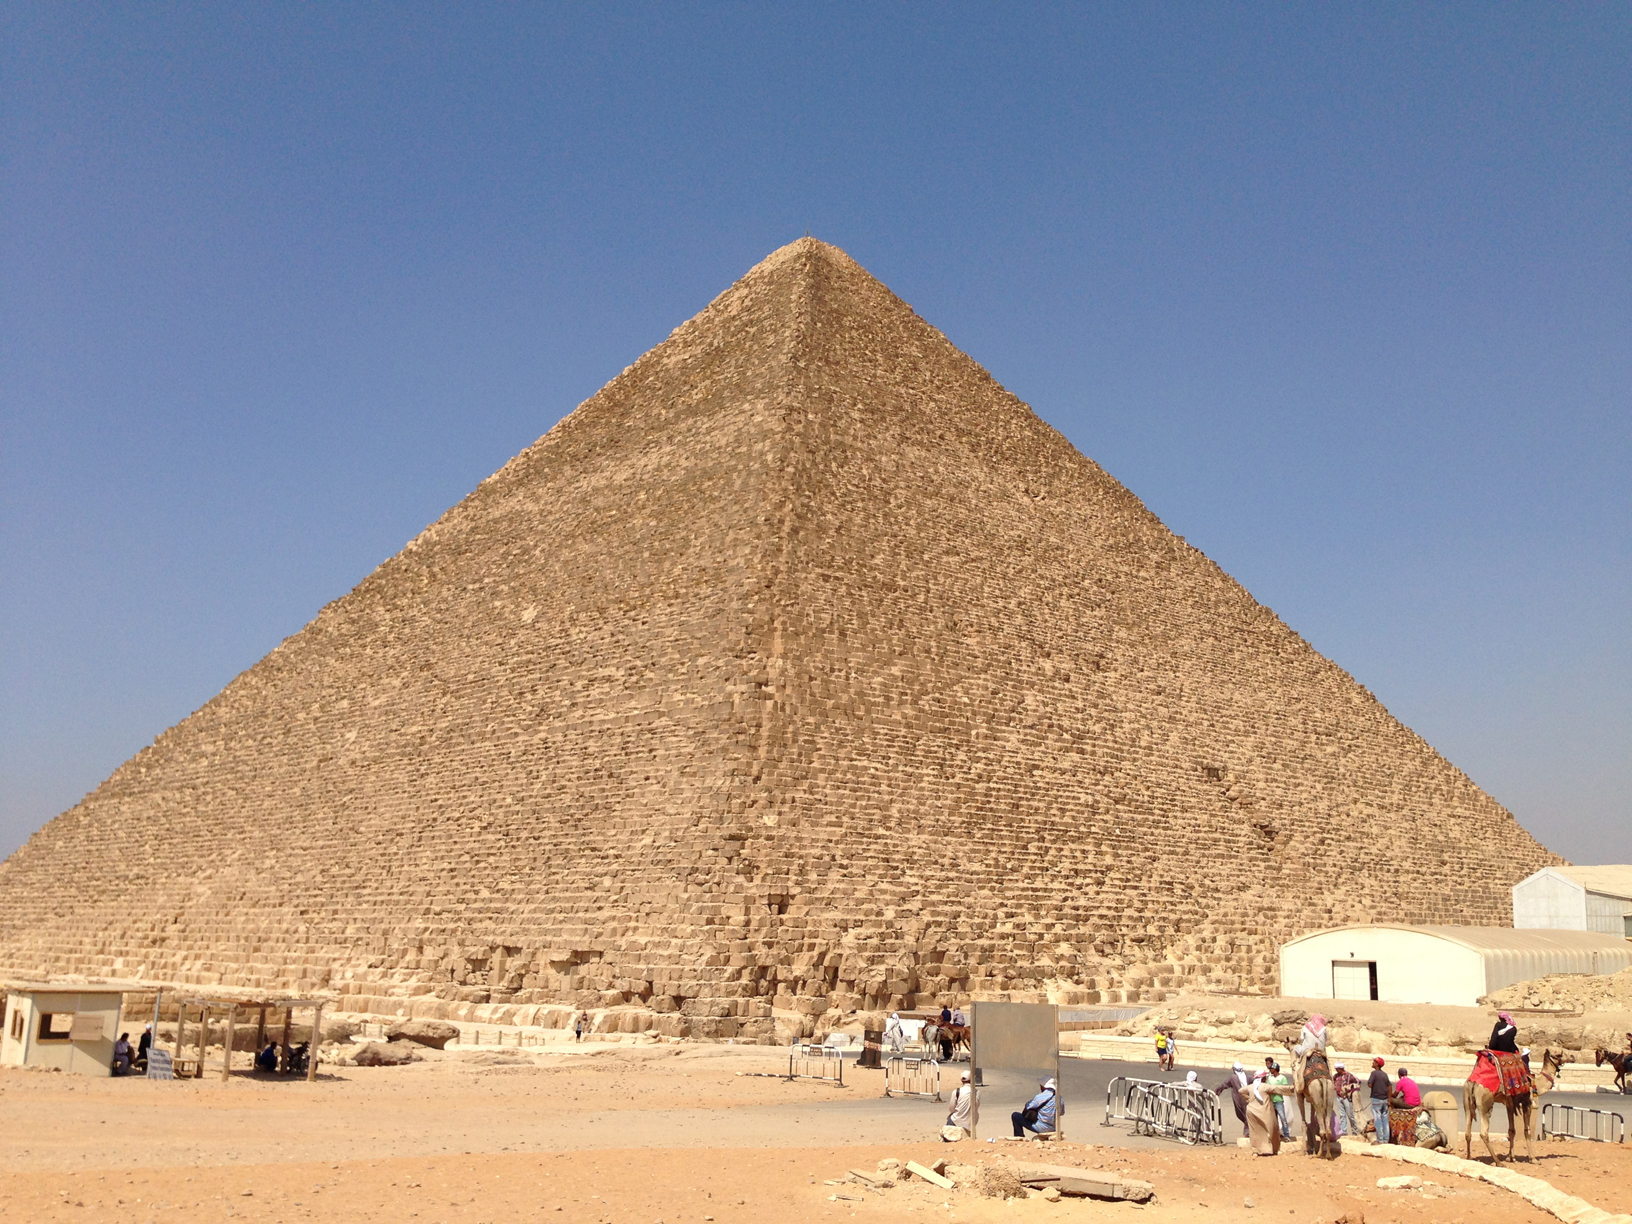 
Пирамида Хеопса